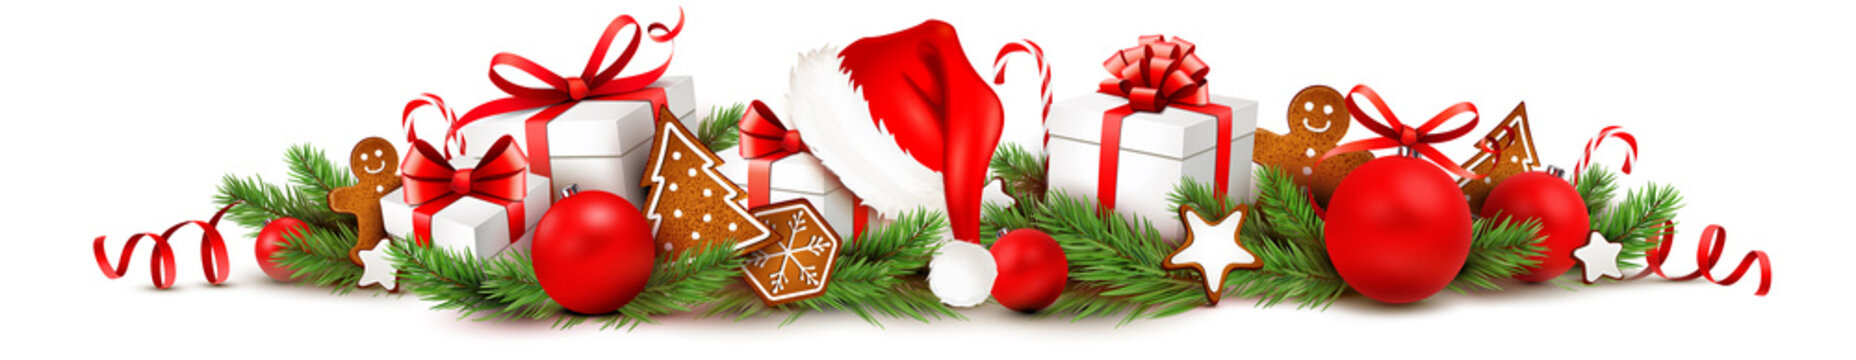 Weihnachtsschmuck mit Geschenken, Lebkuchen, Nikolaus Mütze, Weihnachtskugeln und Tannenzweige - Banner